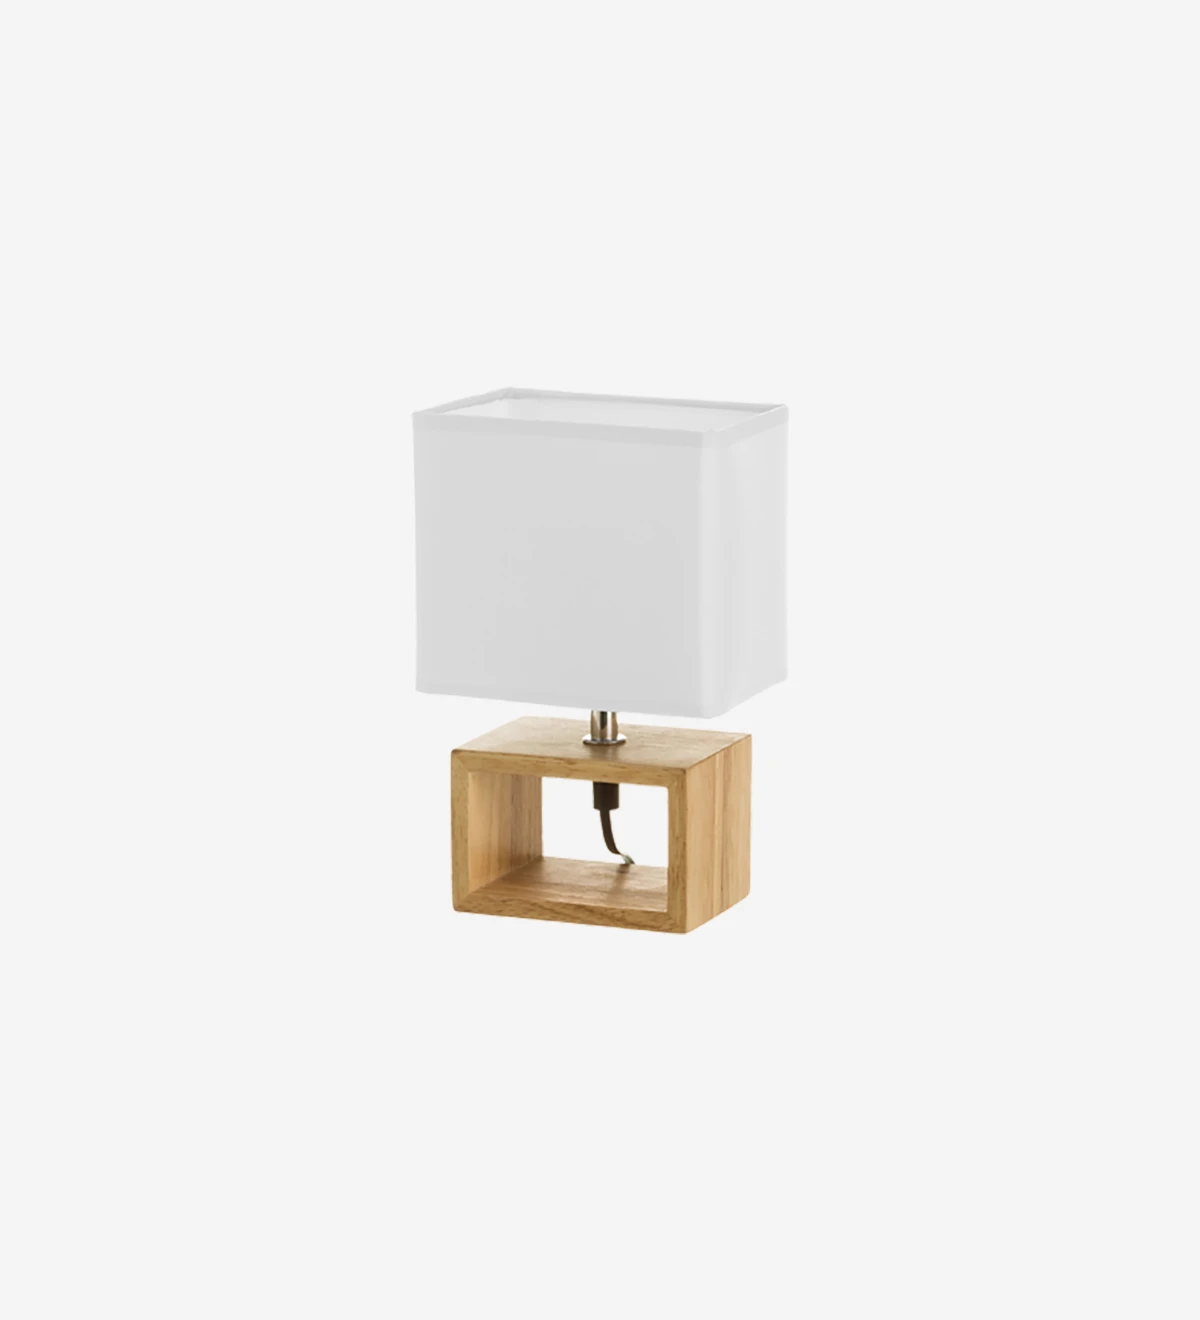  Lampe de table avec base en bois et abat-jour en tissu doublé blanc.